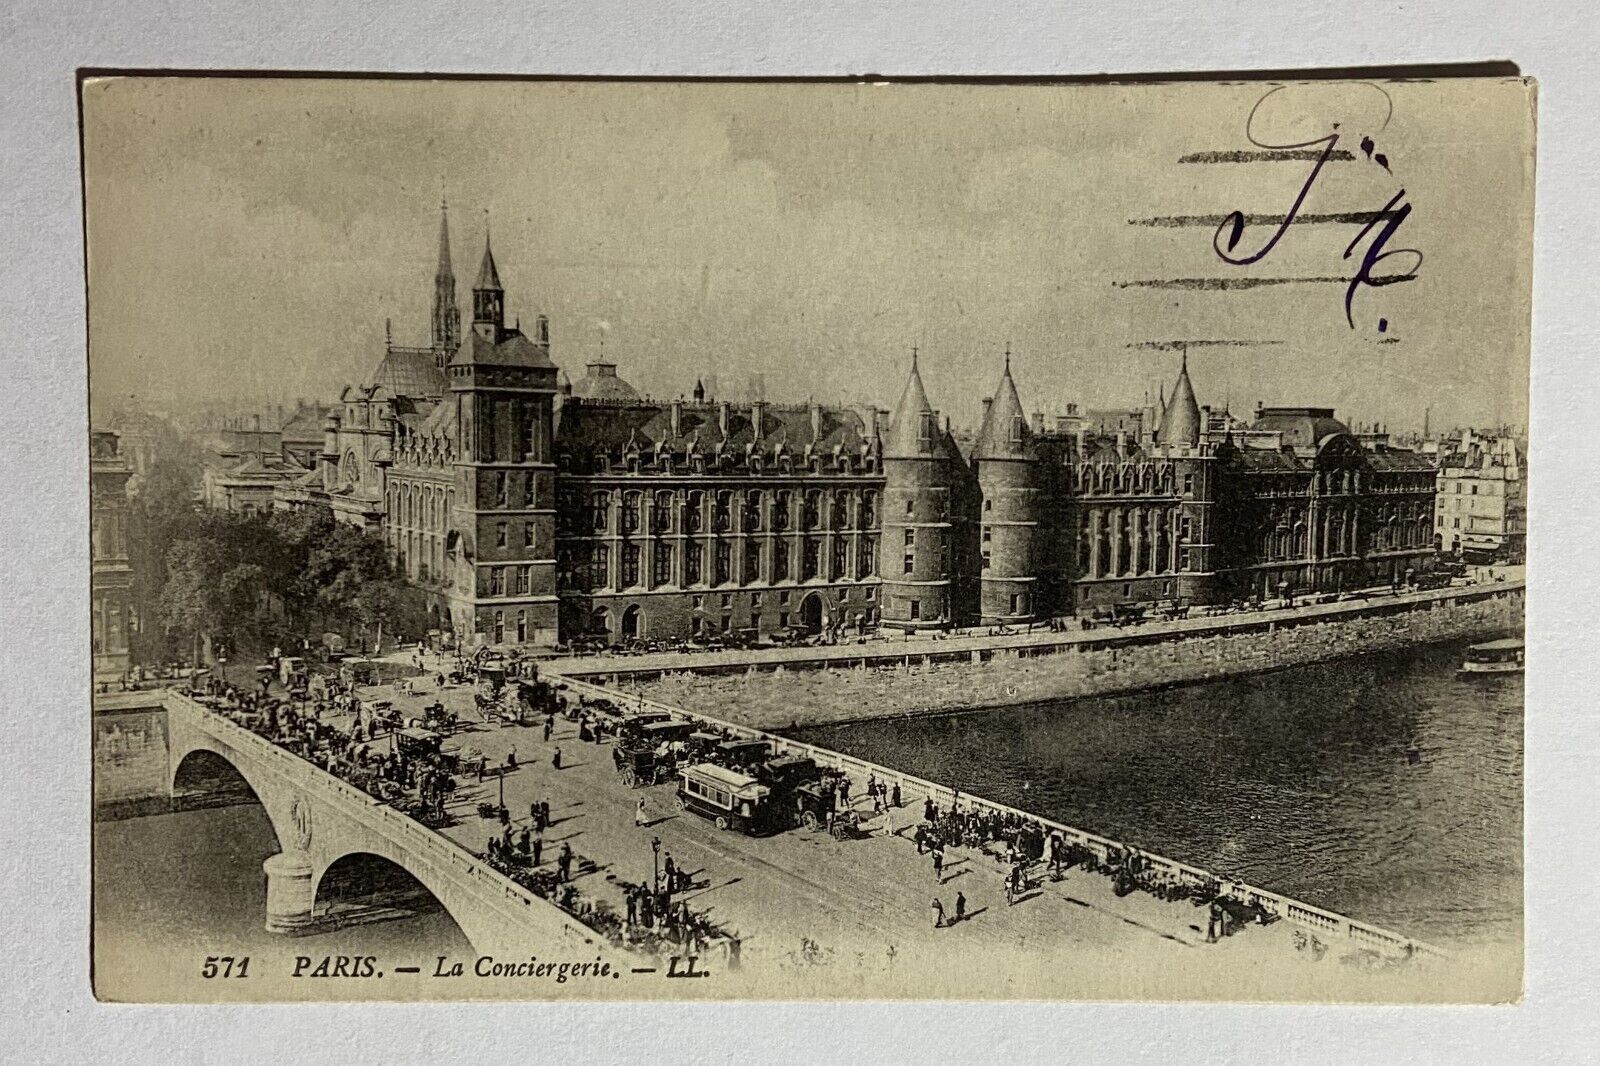 Old Vintage Antique French Postcard Greeting Card La Conciergerie Paris France